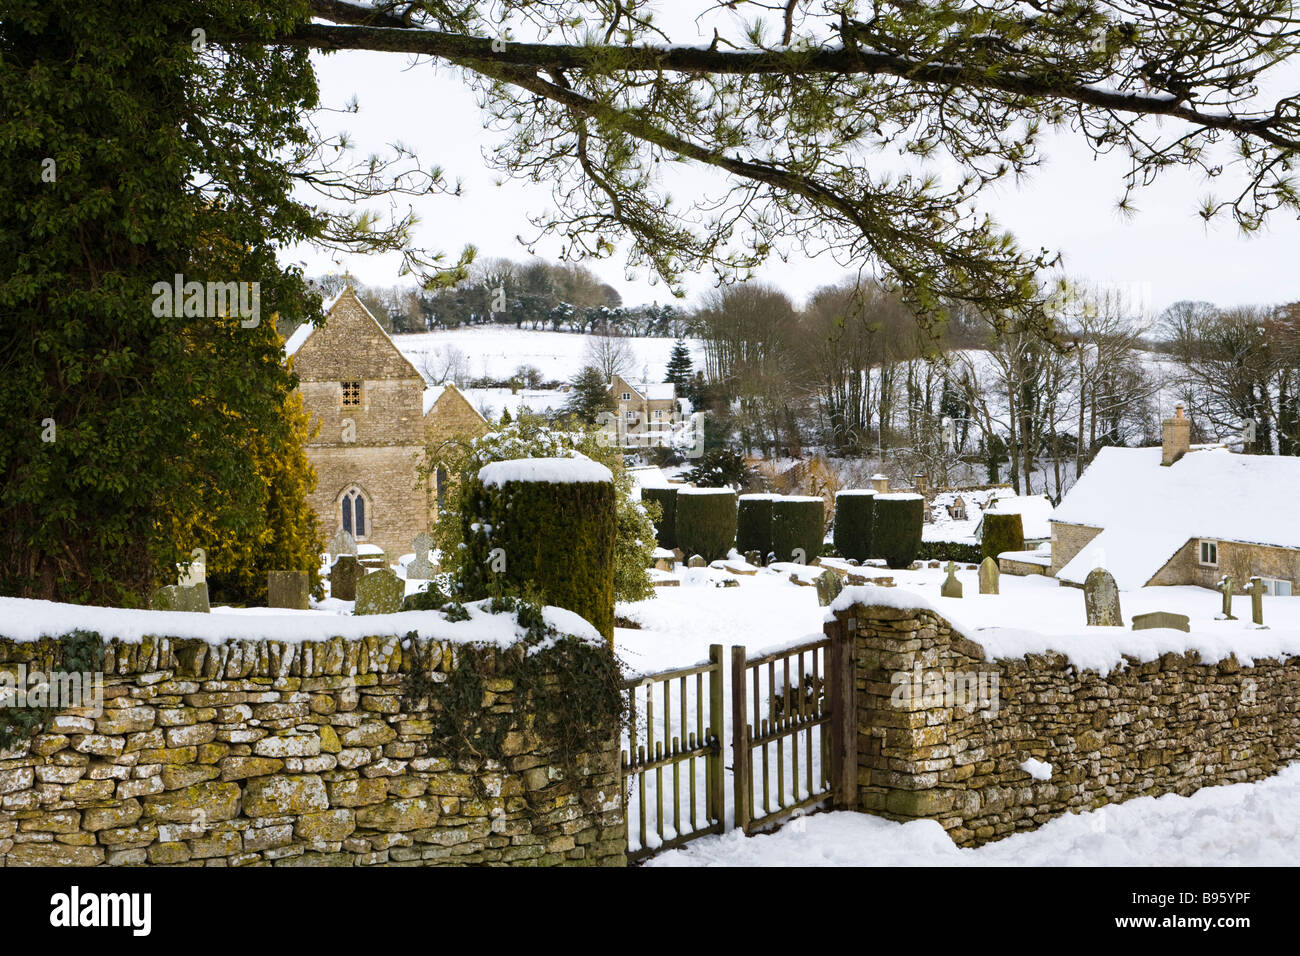 Neige de l'hiver dans le village de Cotswold Duntisbourne Abbots, Gloucestershire Banque D'Images